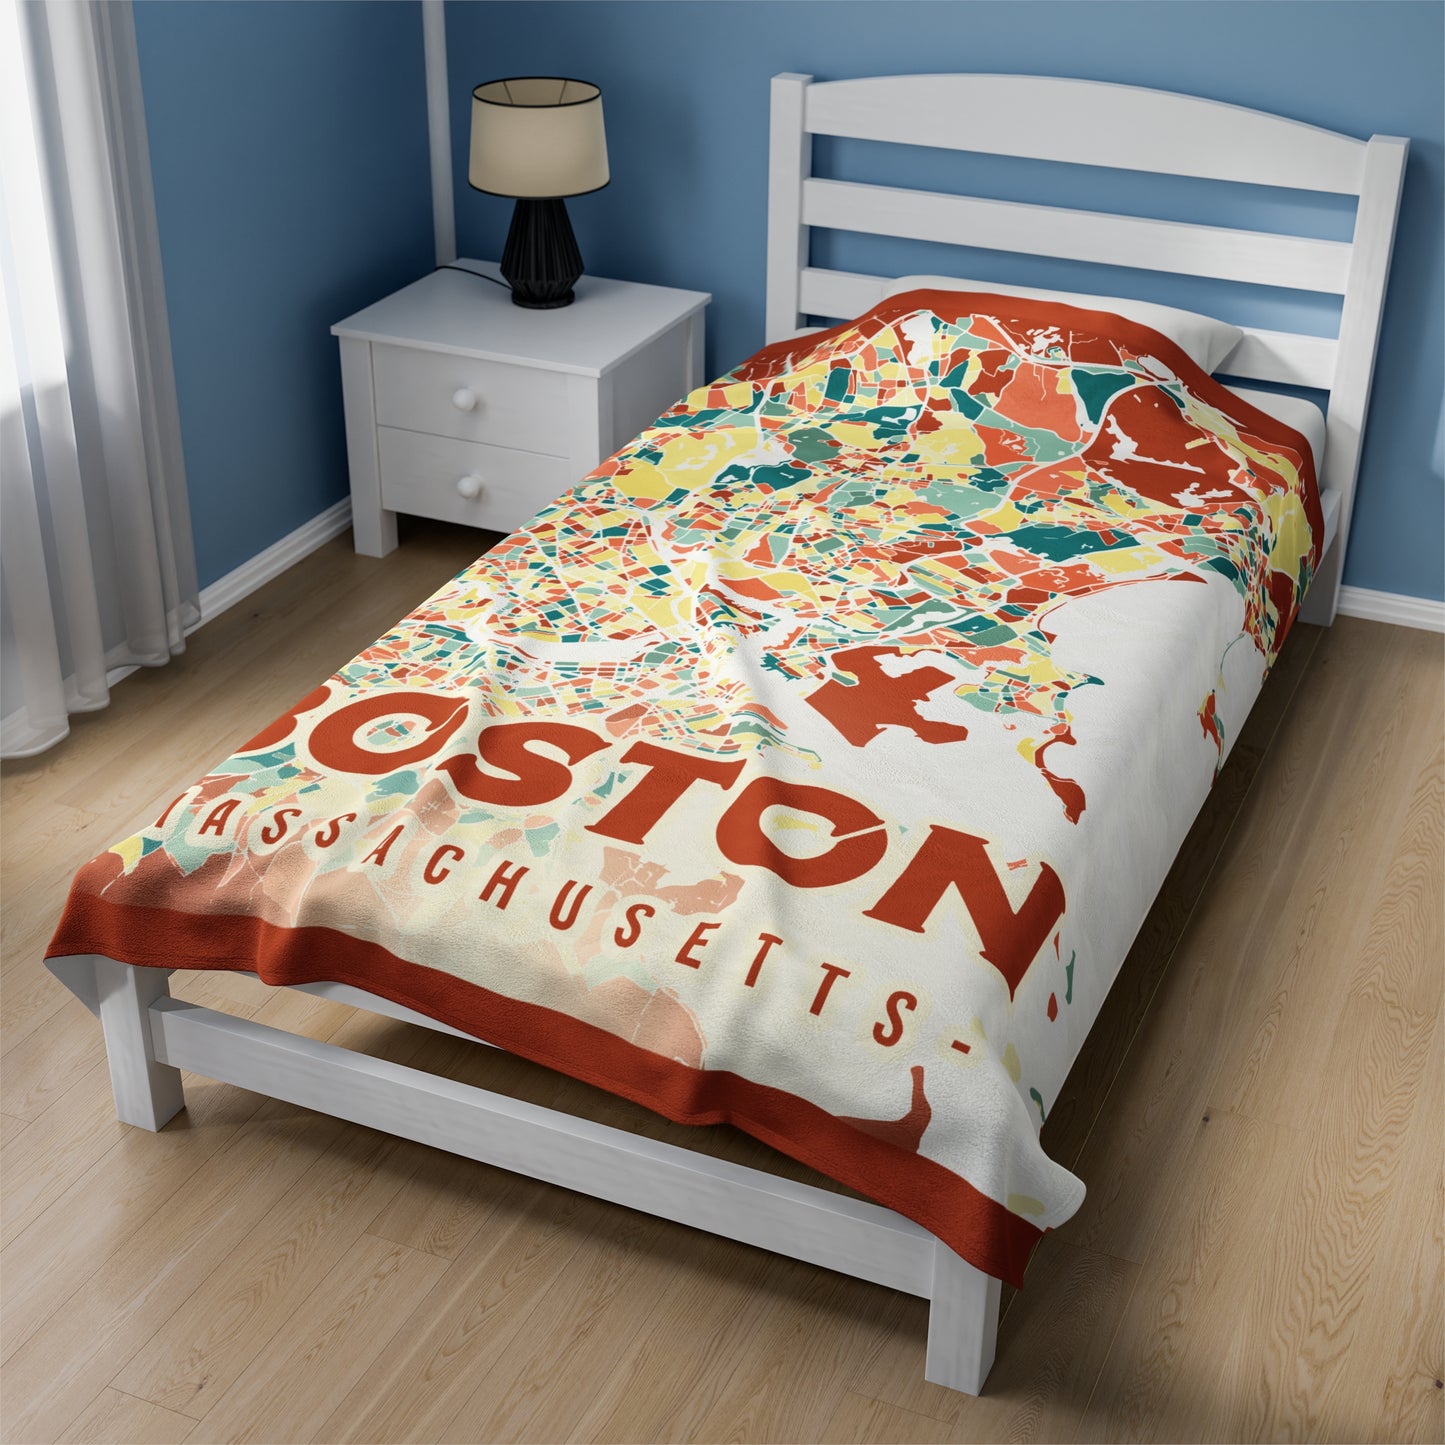 Colorful Boston Map - Velveteen Plush Blanket